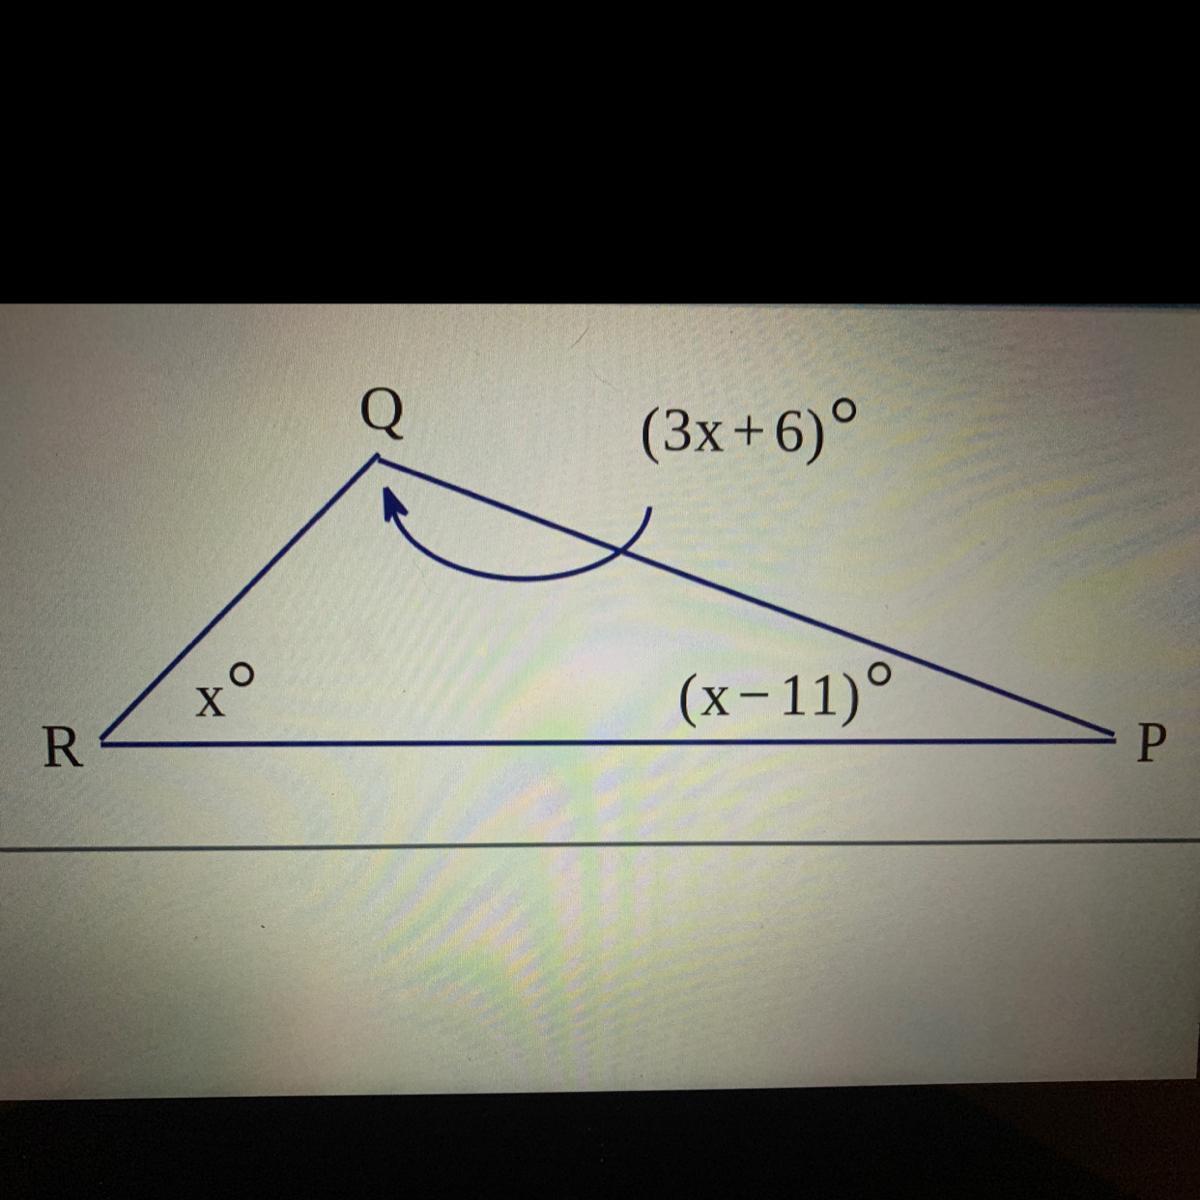 Can You Help Me Find The Angles Of X, R, Q, And P? 